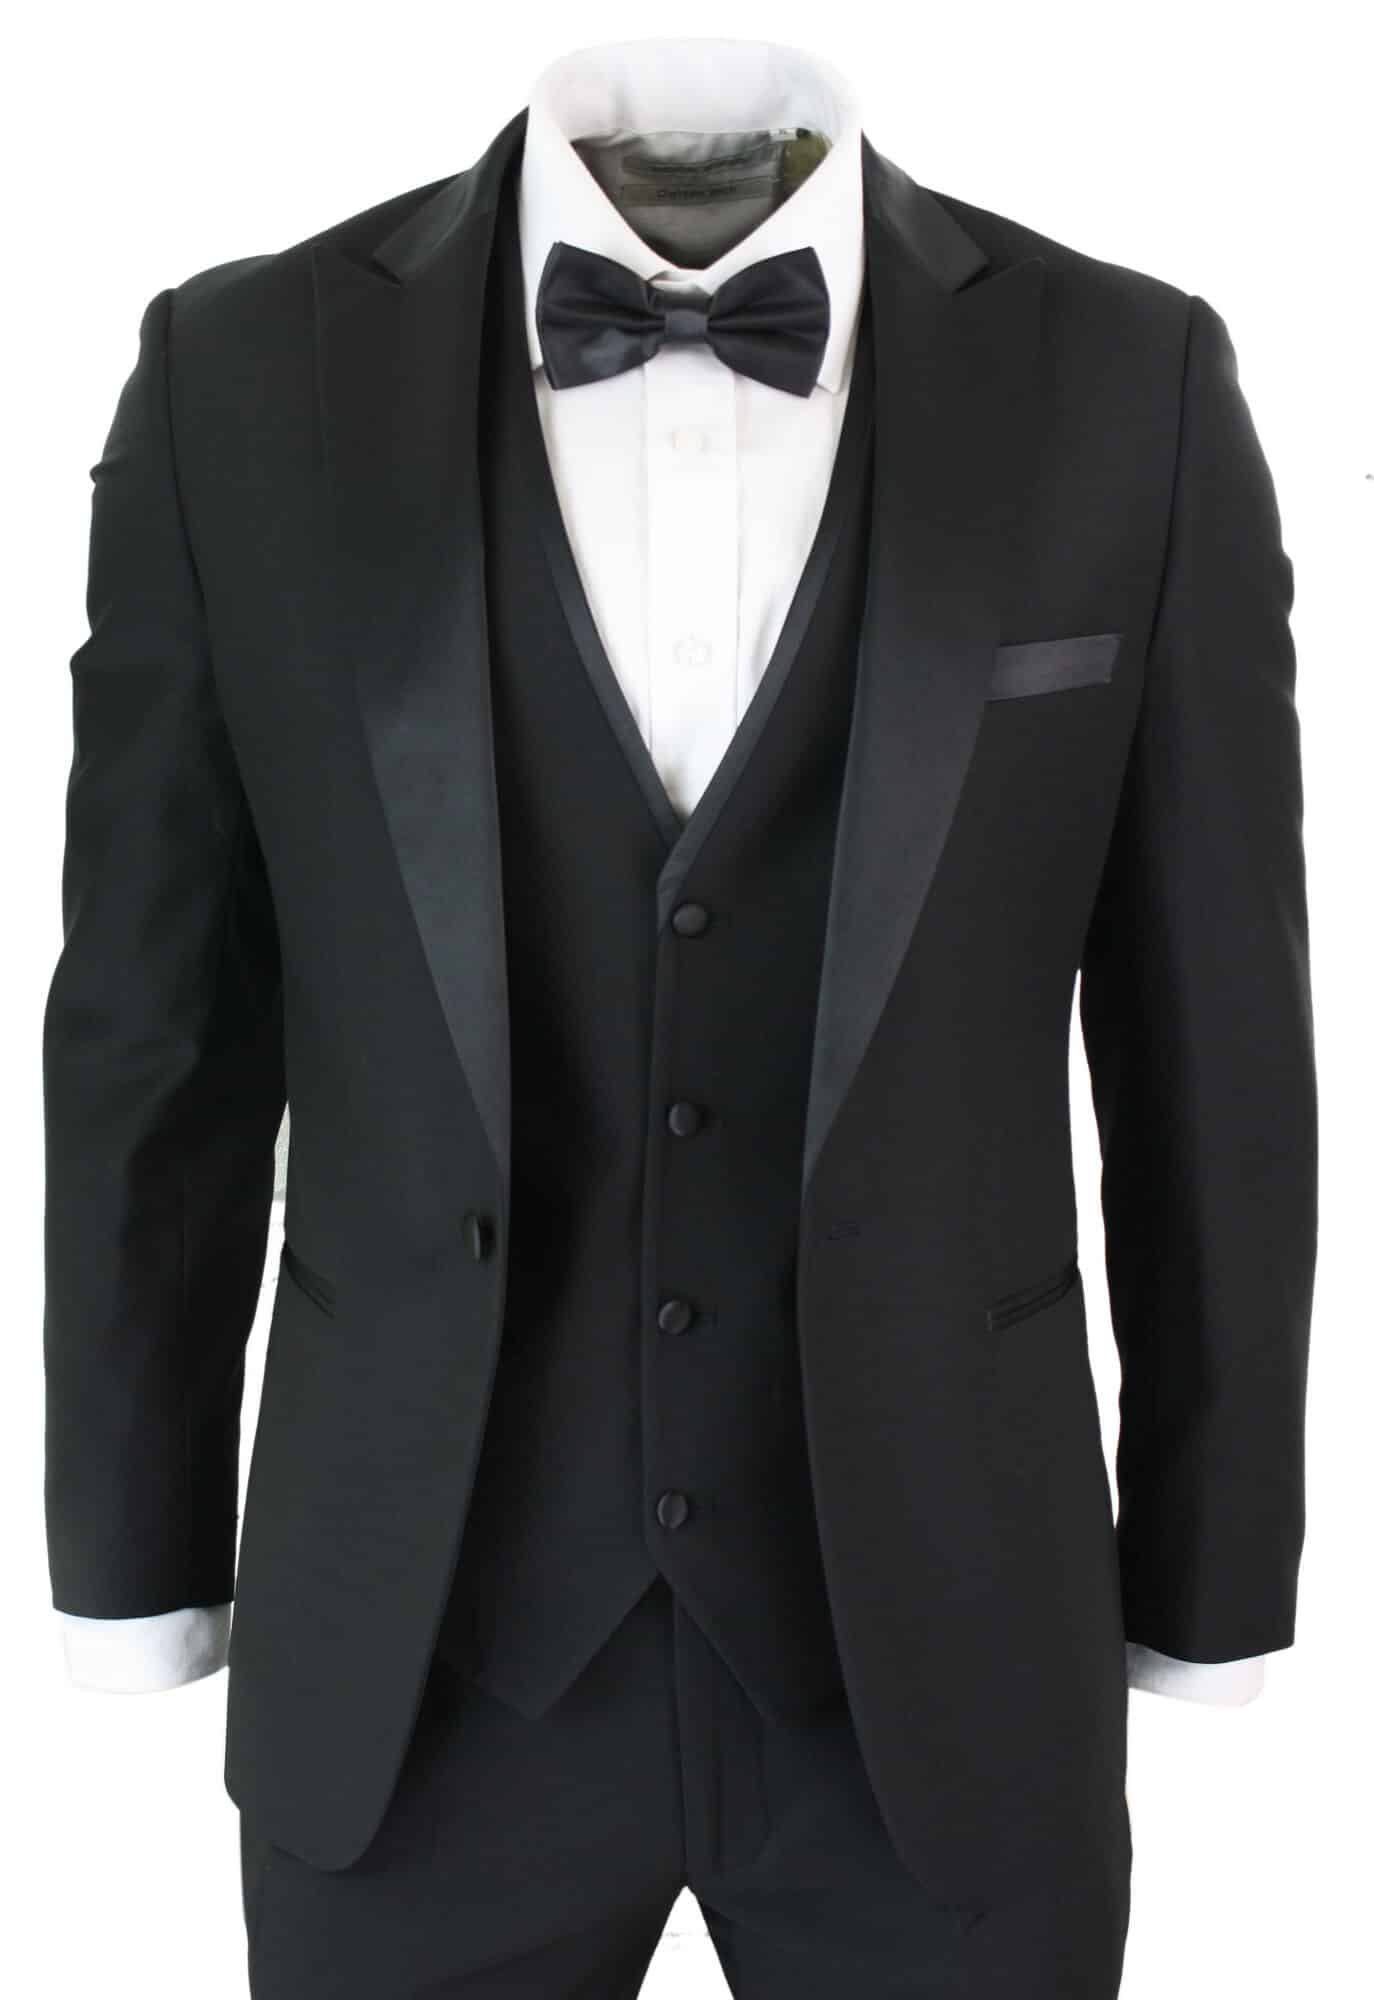 Pa Regent Mens 3 Piece Suit Tuxedo Black 1 1 